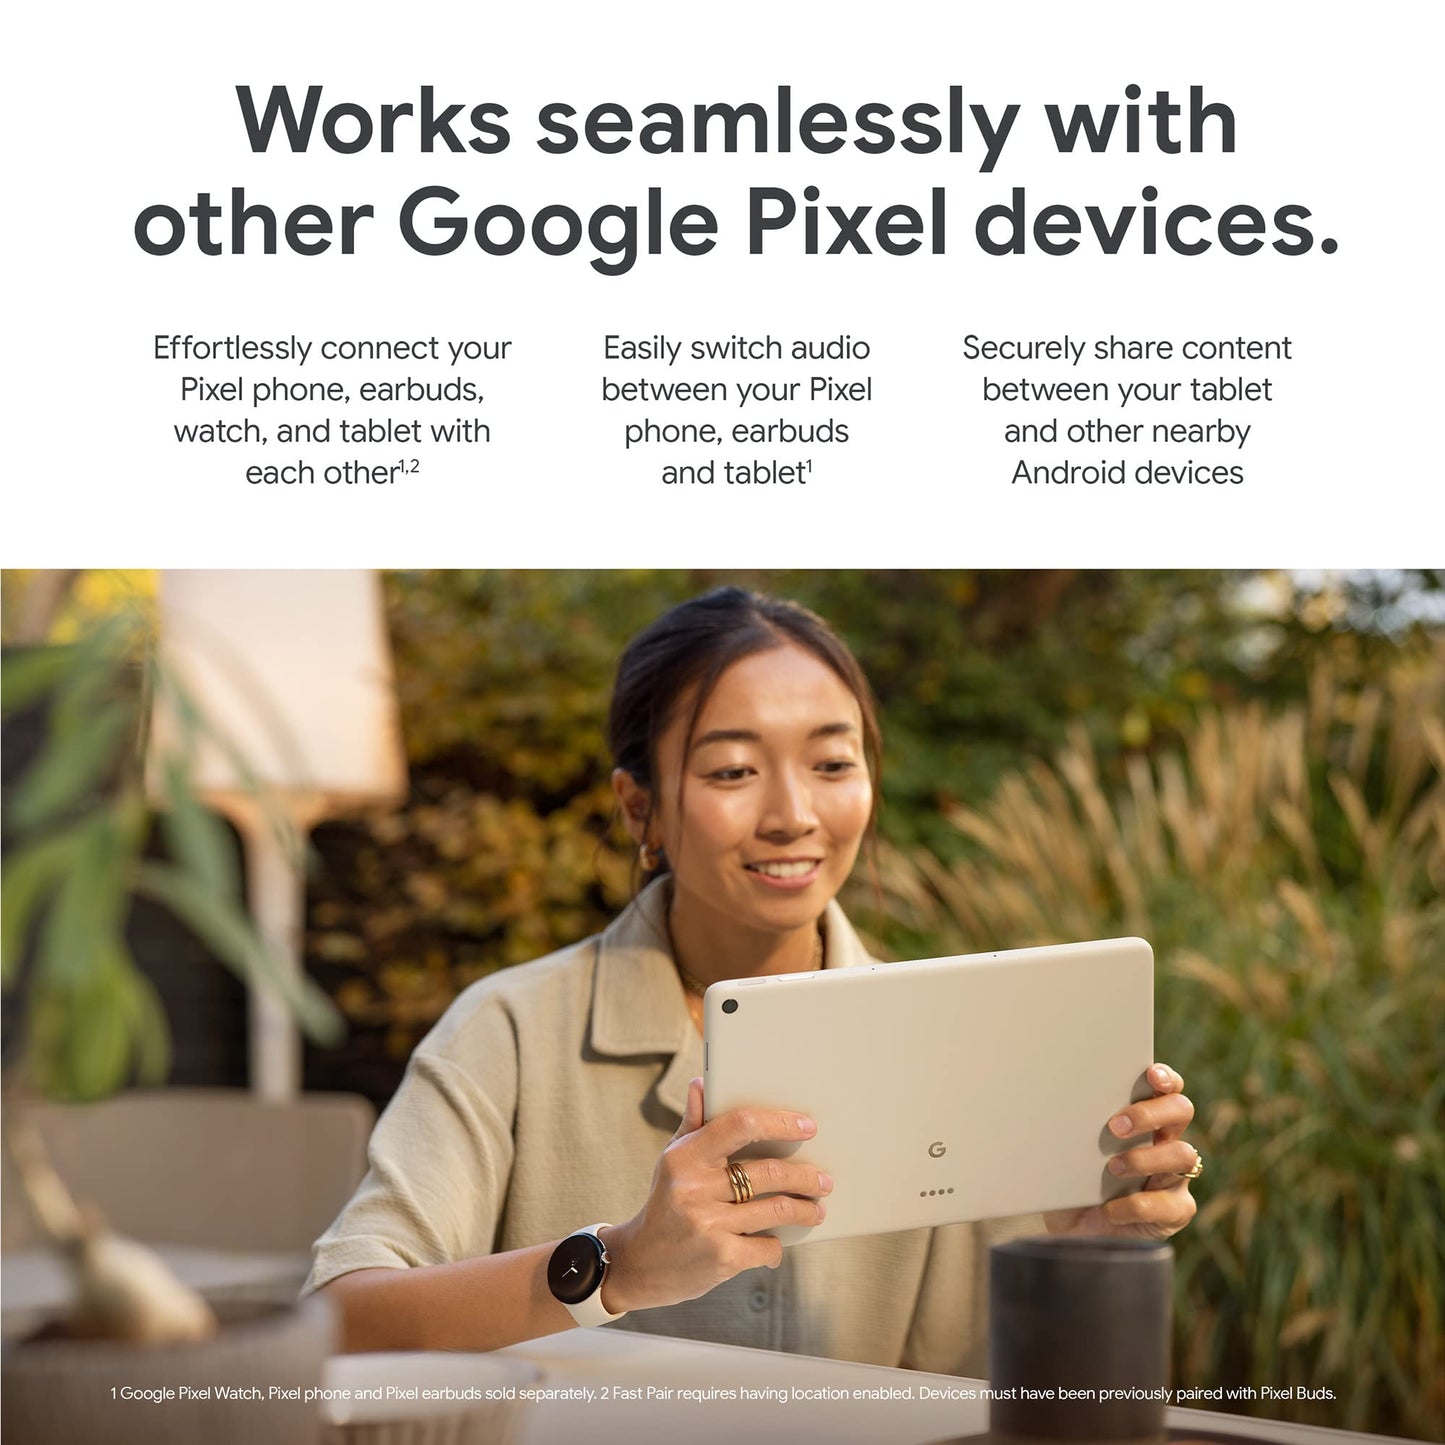 Google Pixel Tablet - 128GB - Porcelain